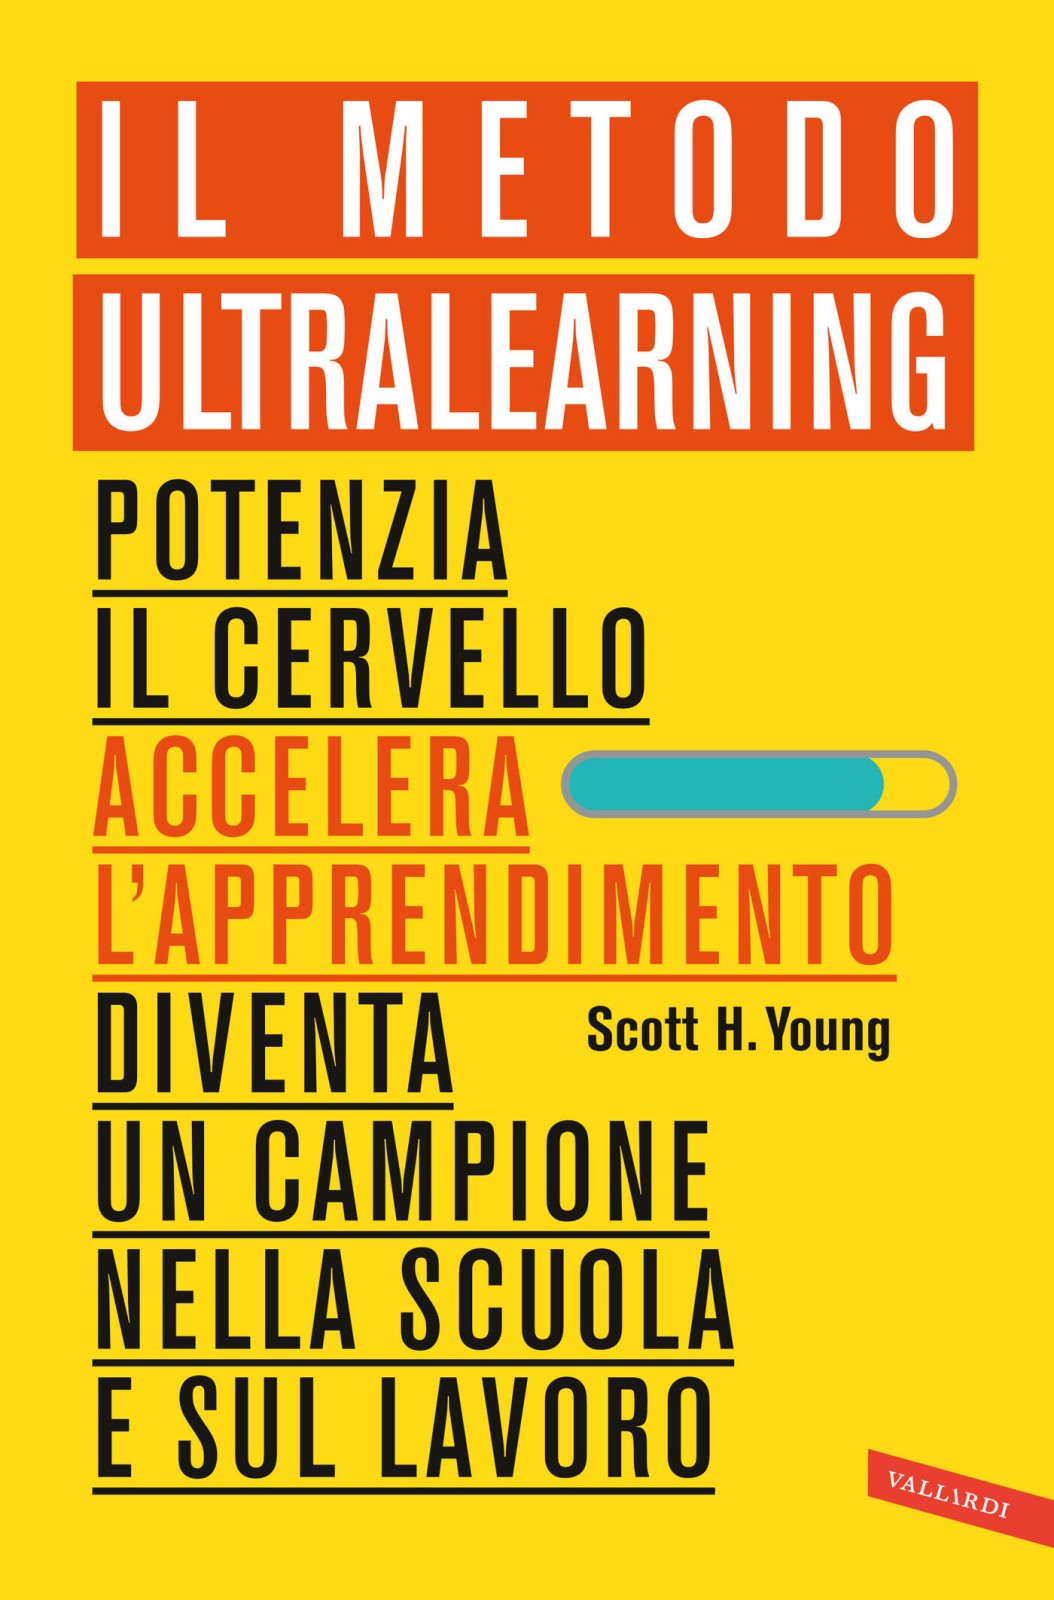 📚 Bookclub #1: Il metodo Ultralearning